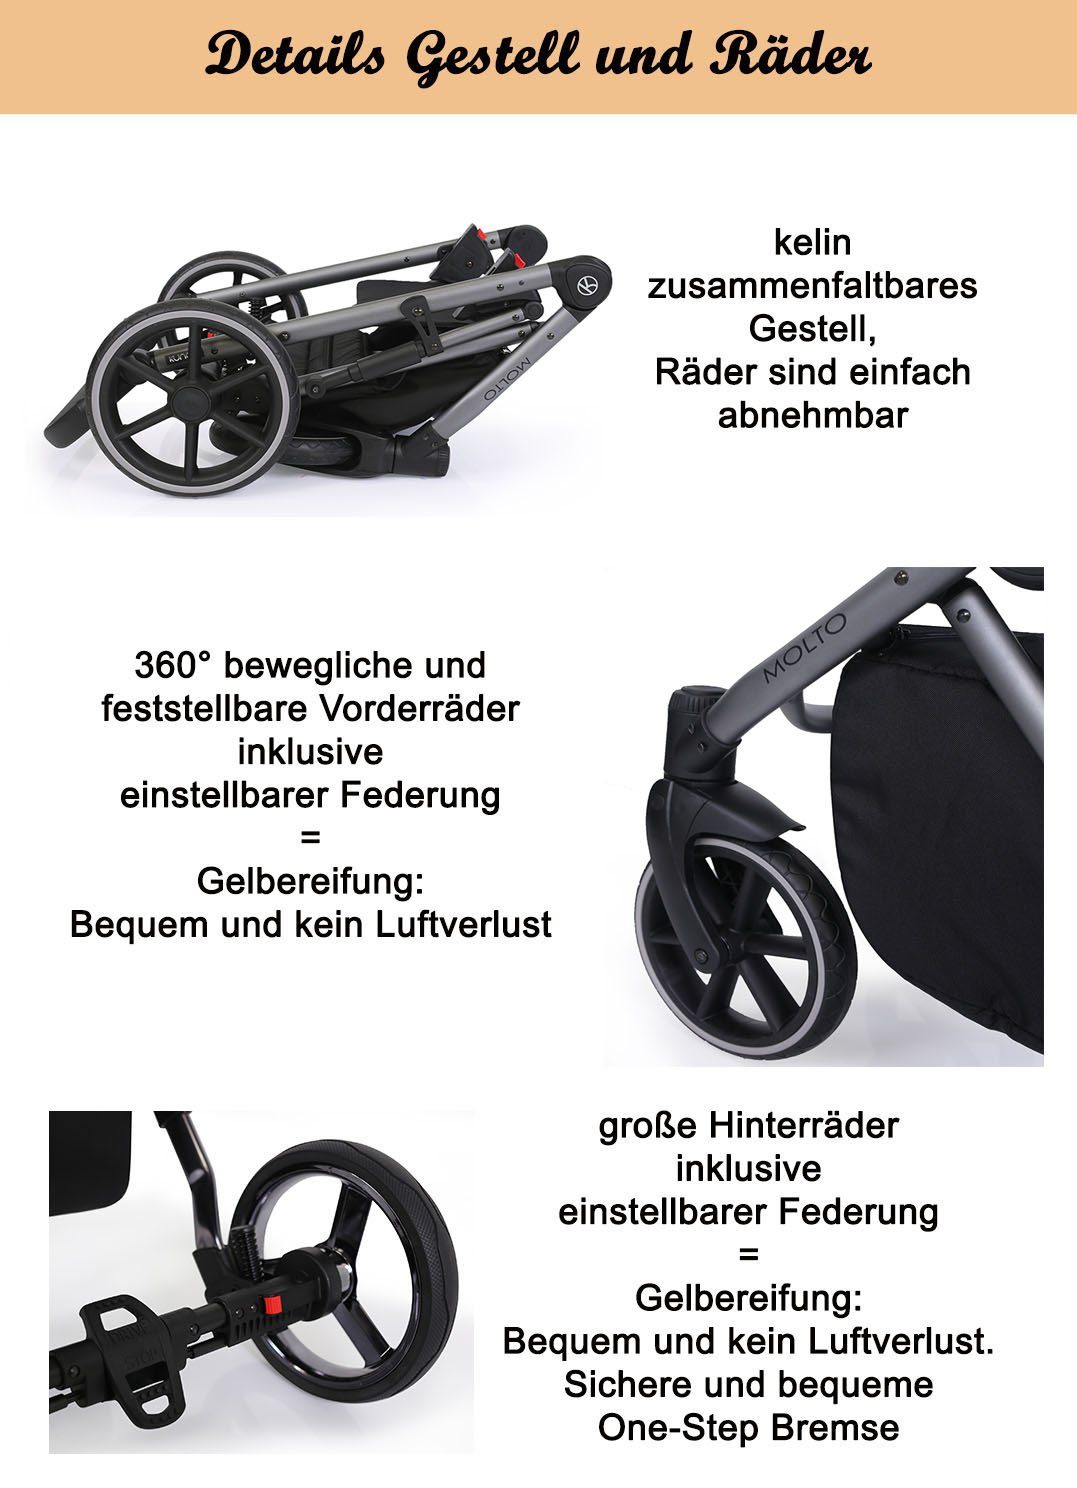 von Gestell - 4 Kombi-Kinderwagen = 3 schwarzes Autositz Molto Grau-Dekor - babies-on-wheels Geburt Teile inkl. bis in 13 1 Jahre